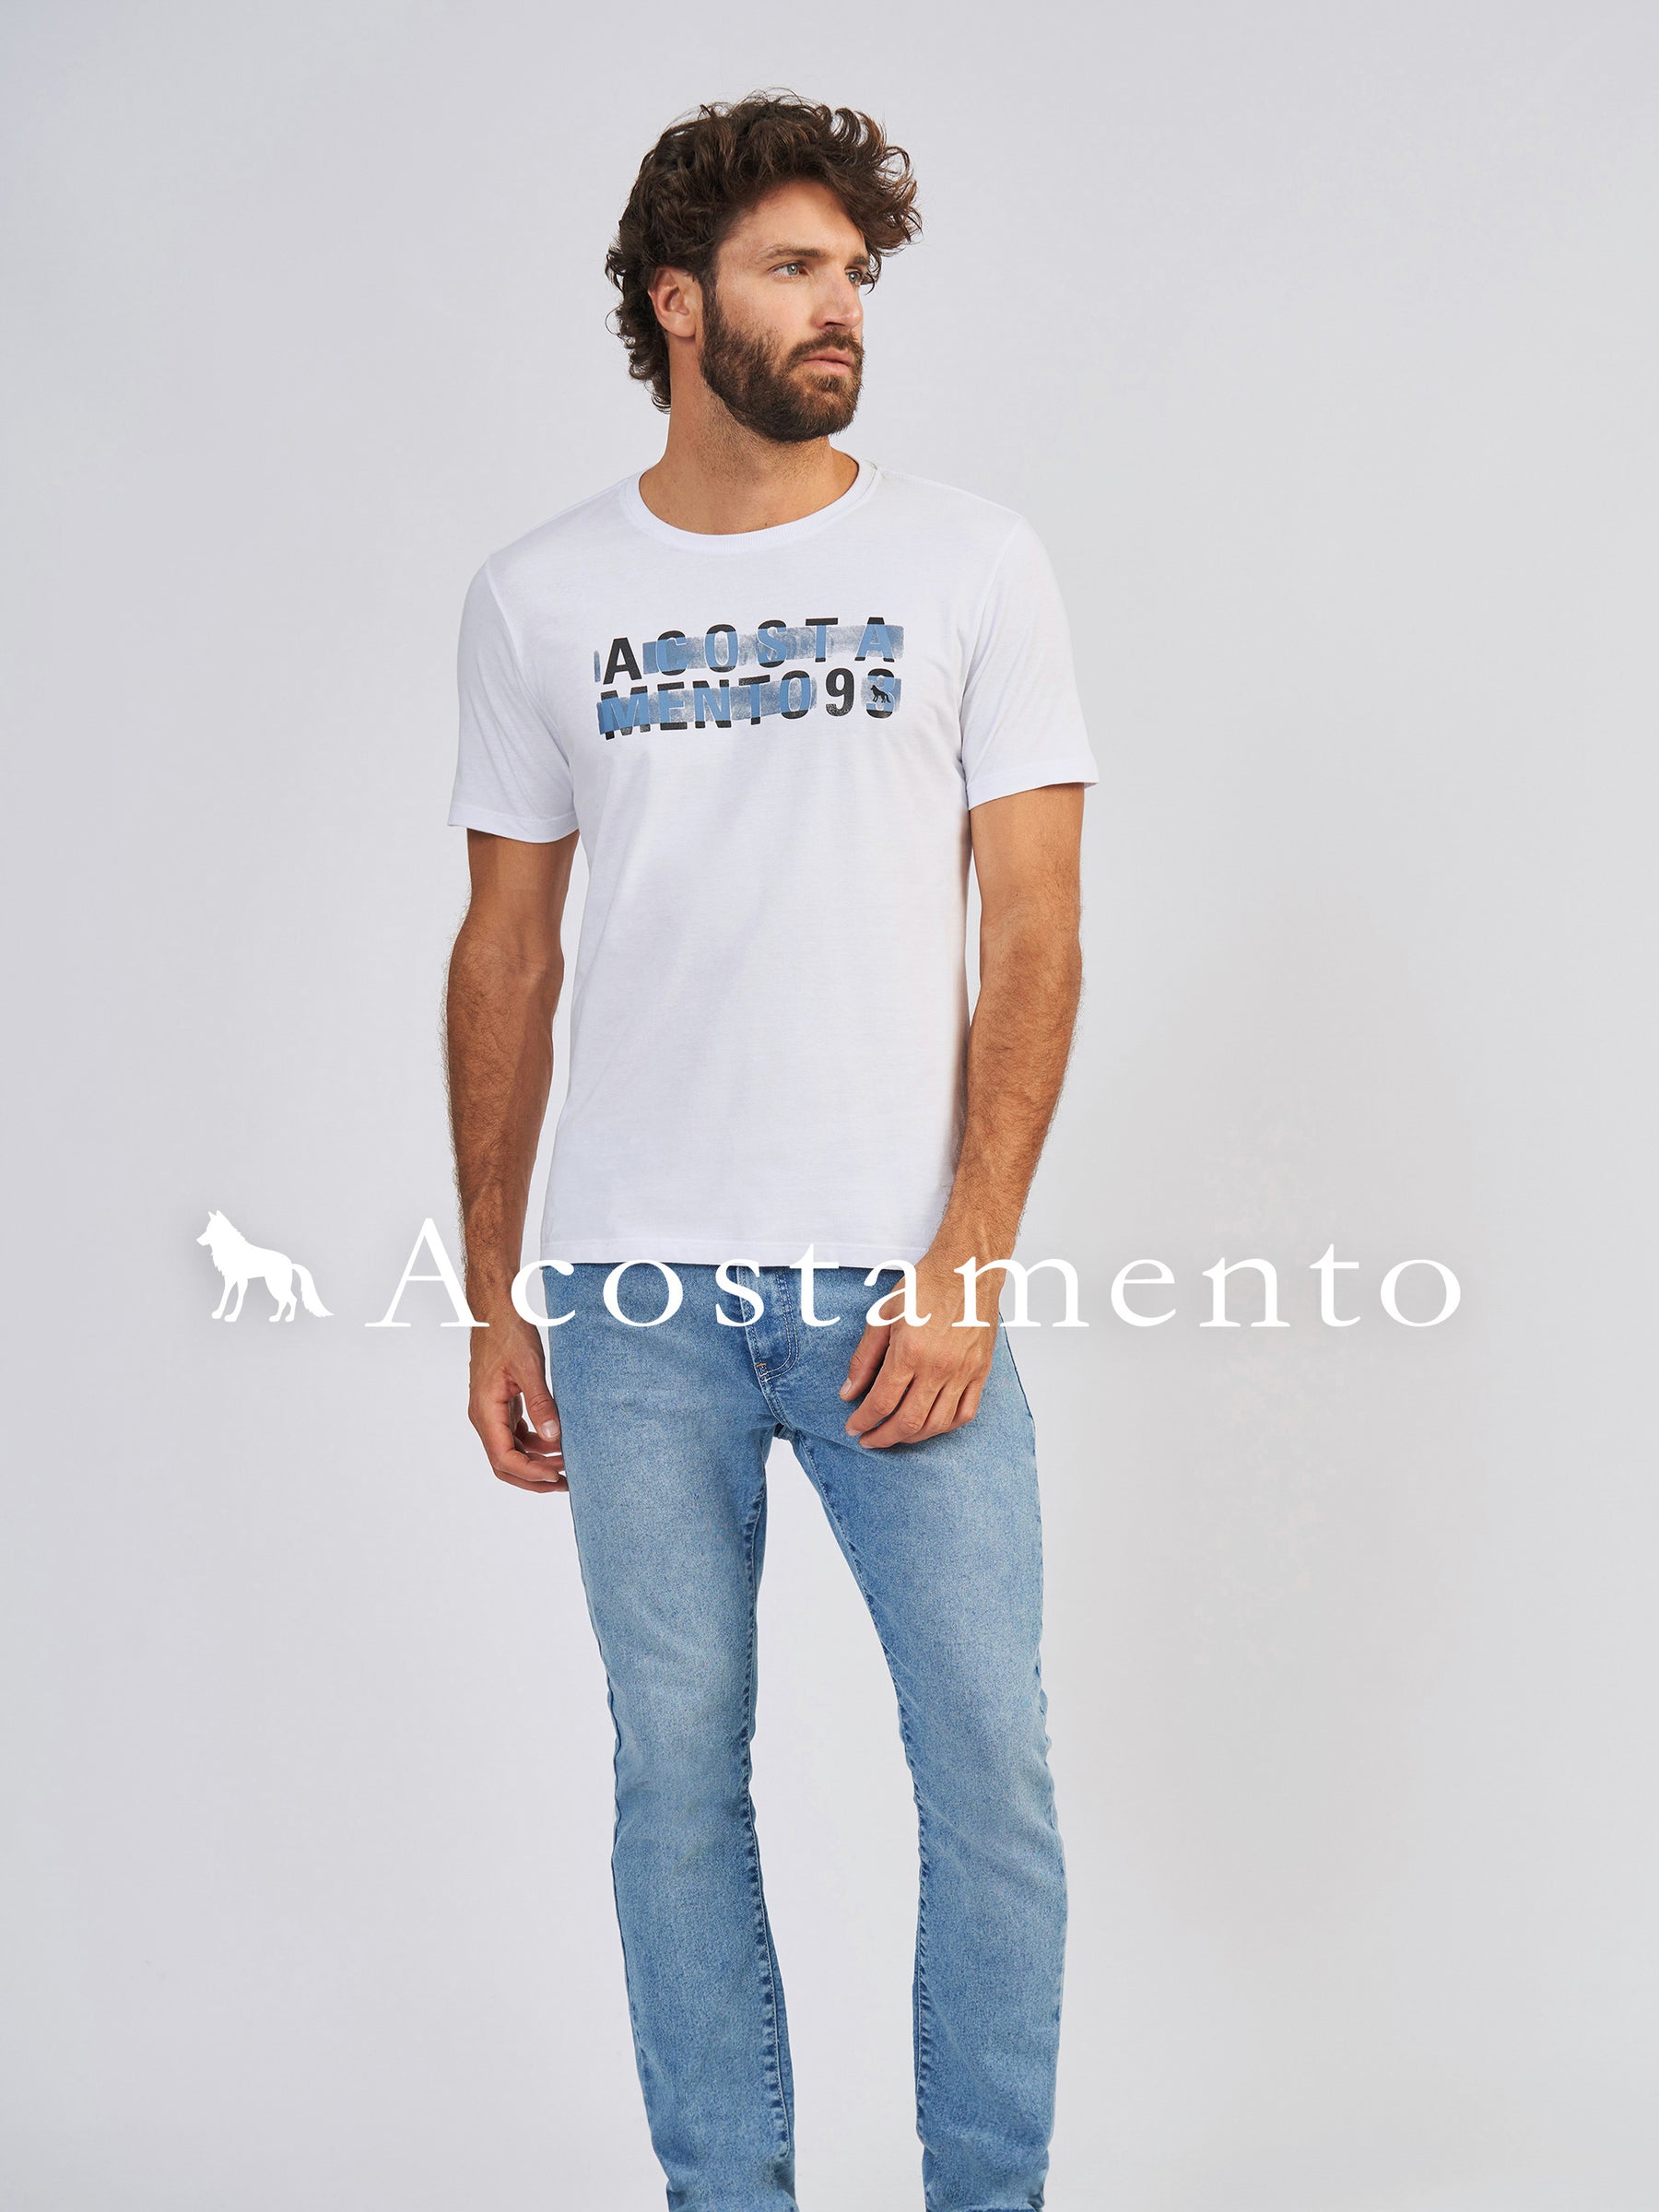 Camiseta Faixa Acostamento - Hellik Store